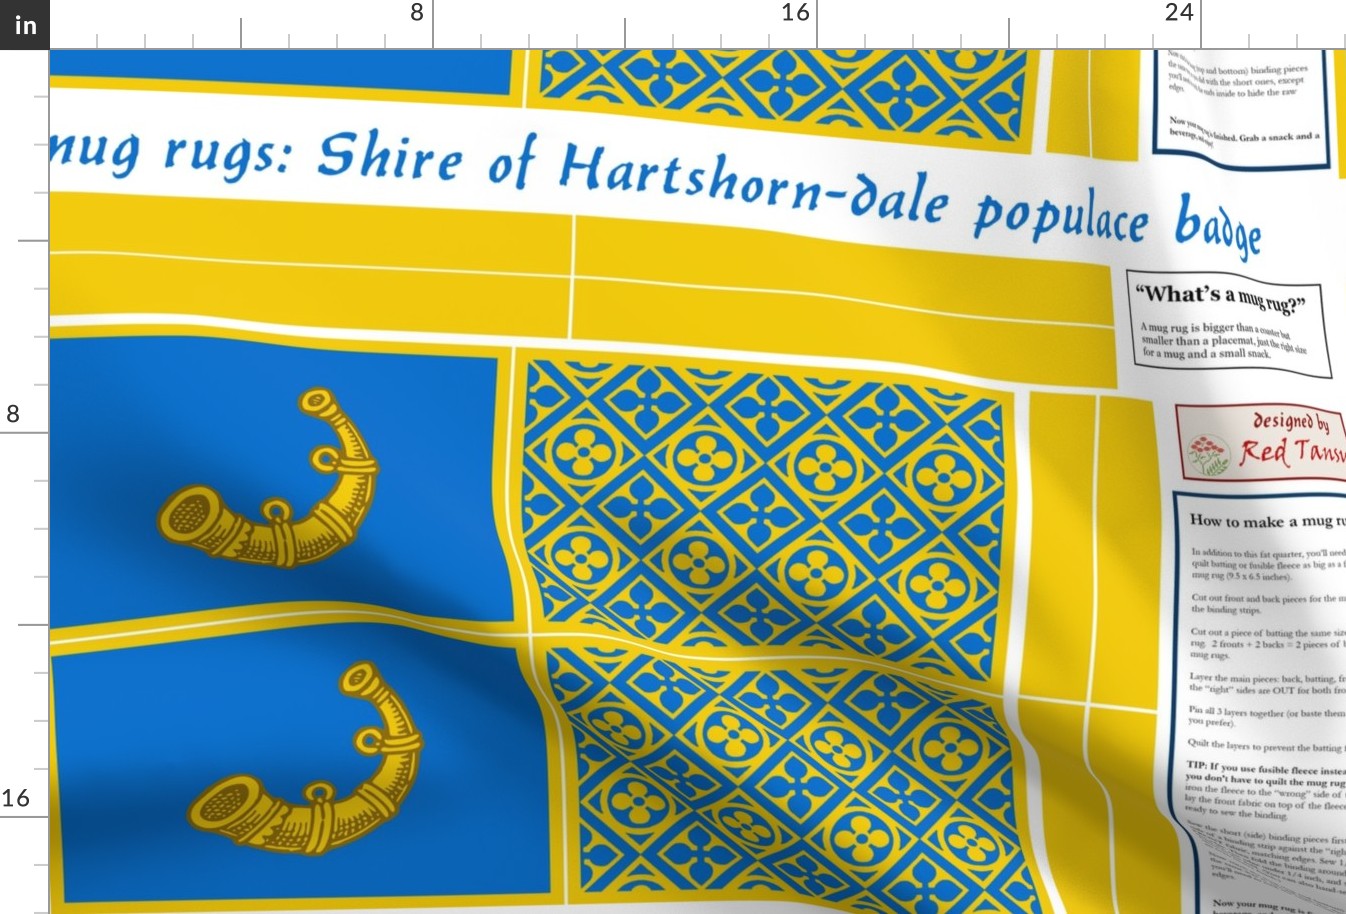 mug rugs: Shire of Hartshorn-dale (SCA)